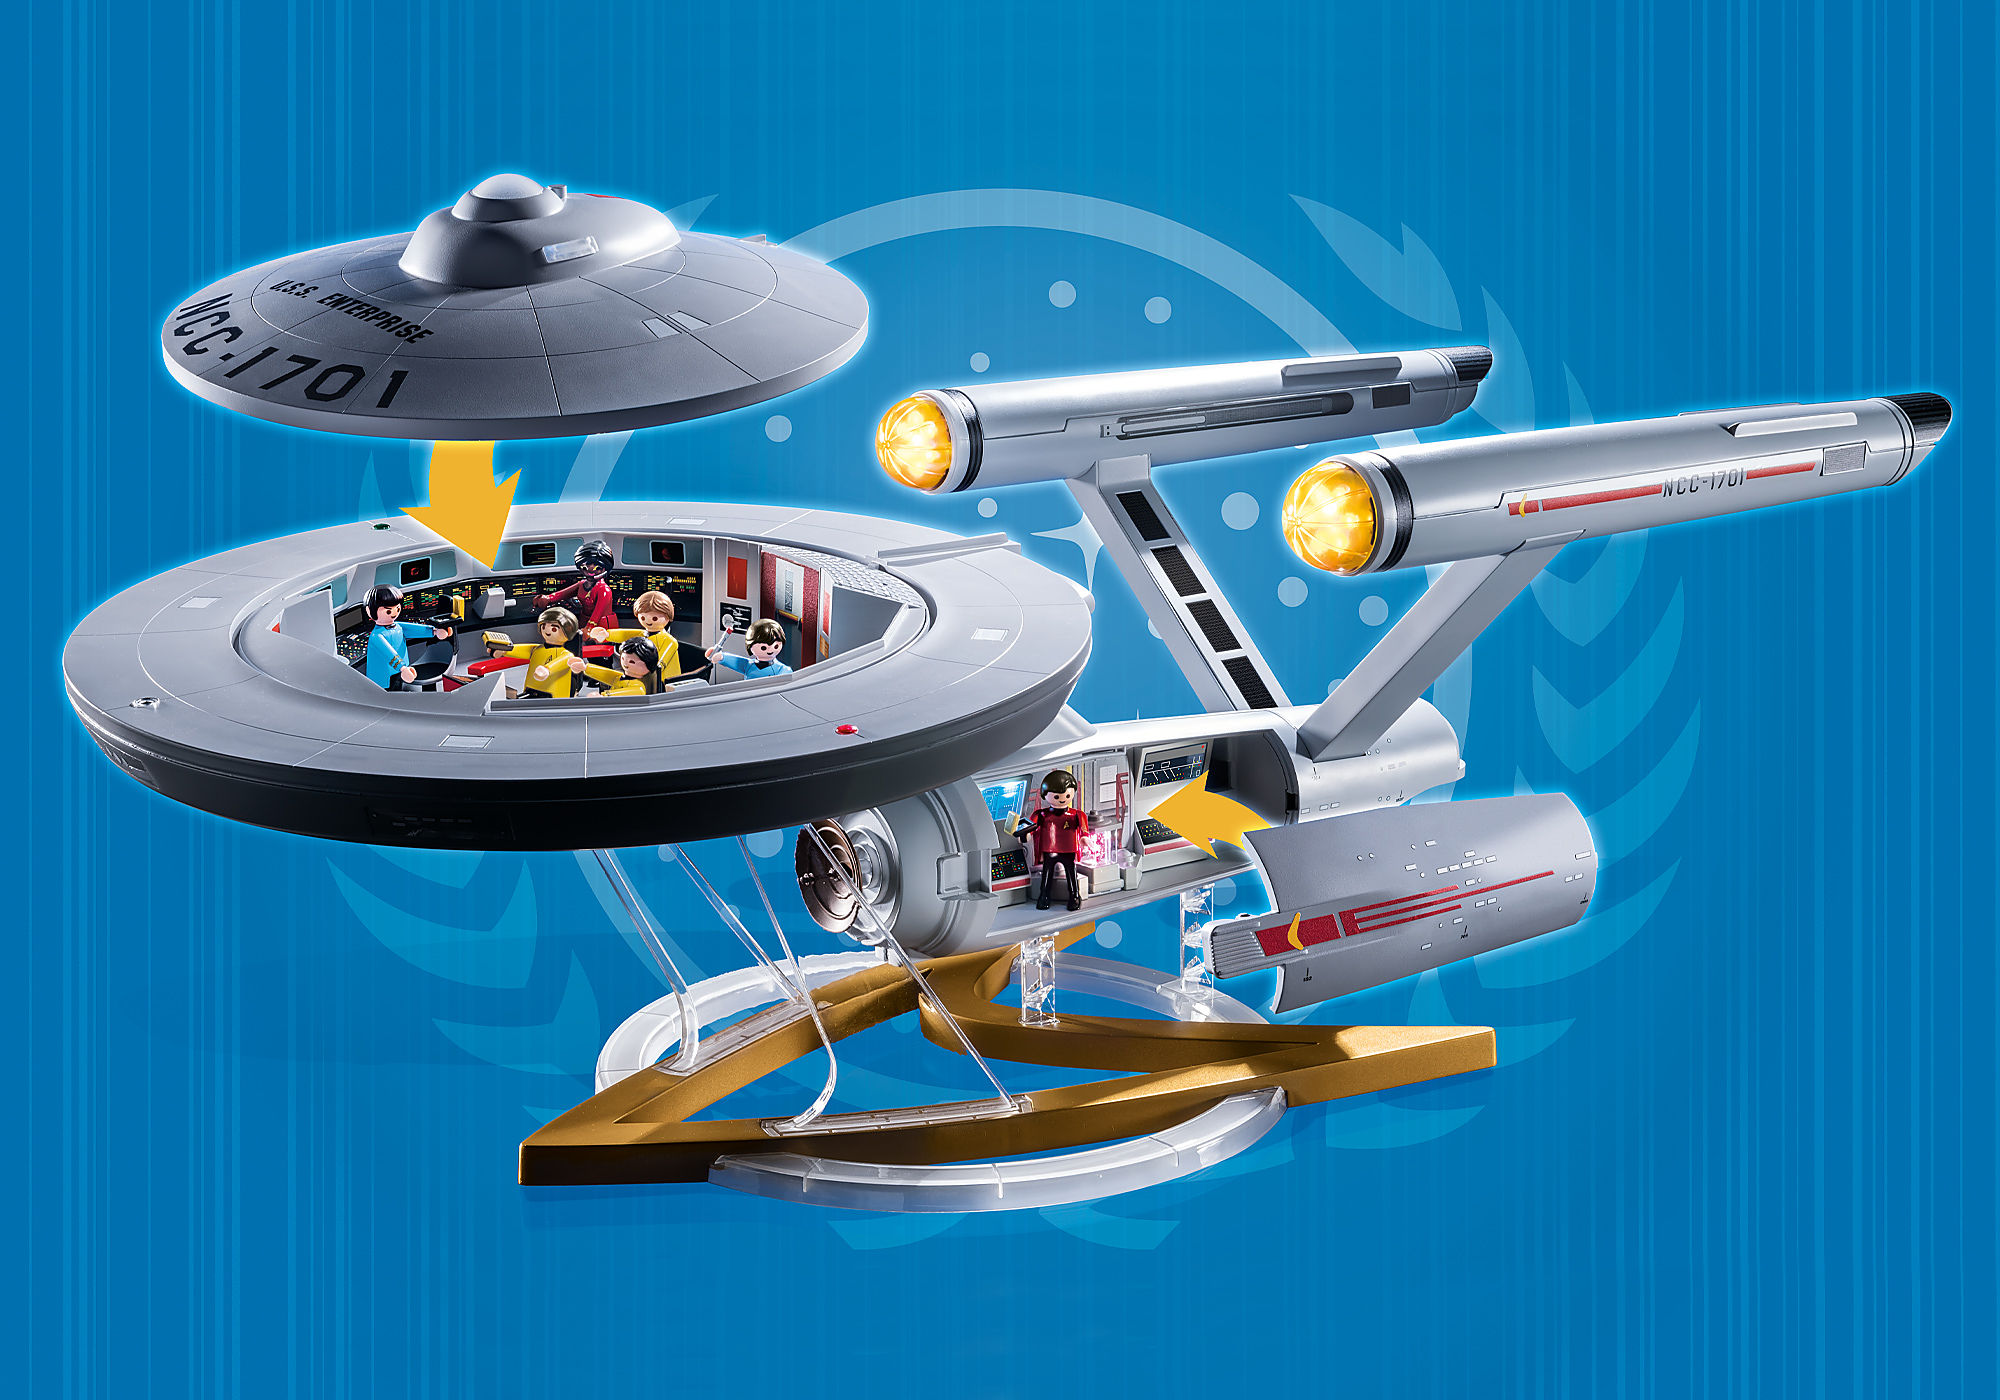 Le set Playmobil Star Trek U.S.S. Enterprise NCC-1701 est à un